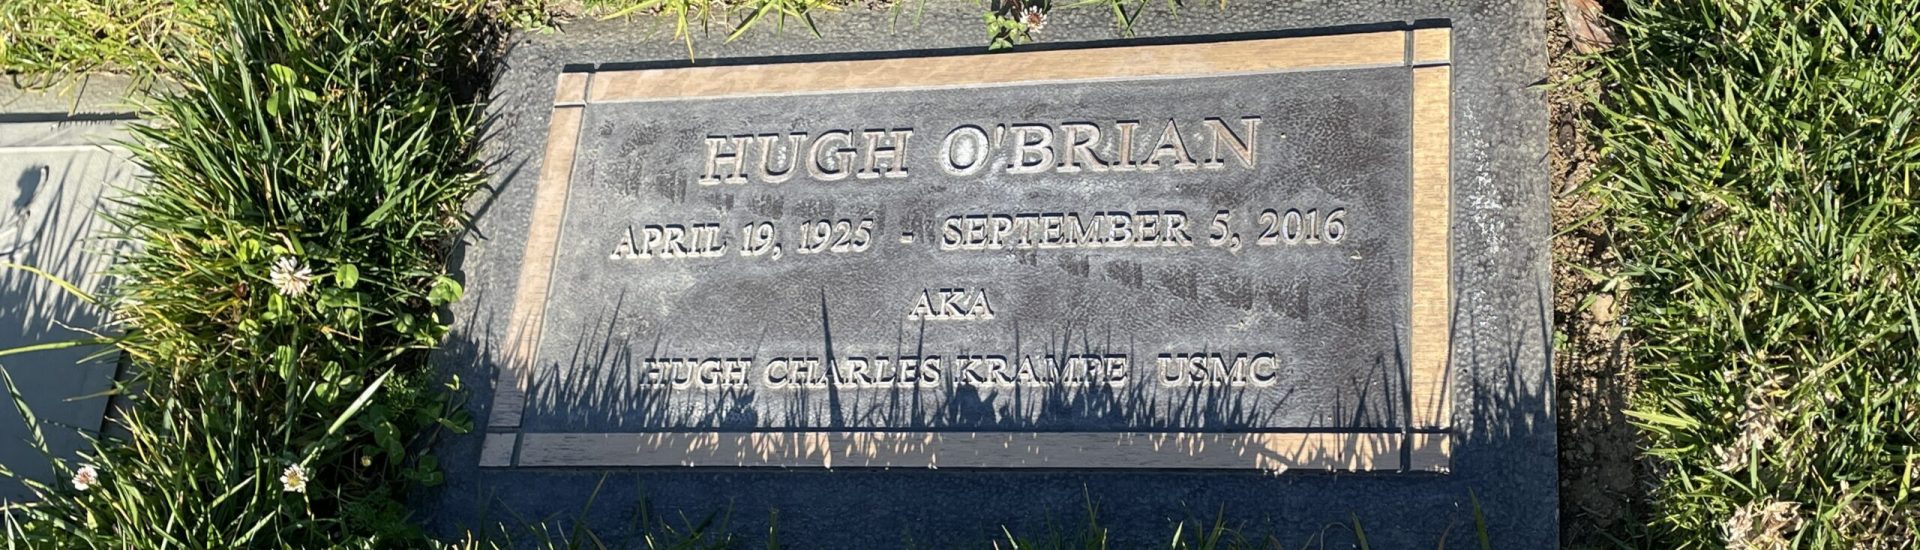 Hugh O'Brian